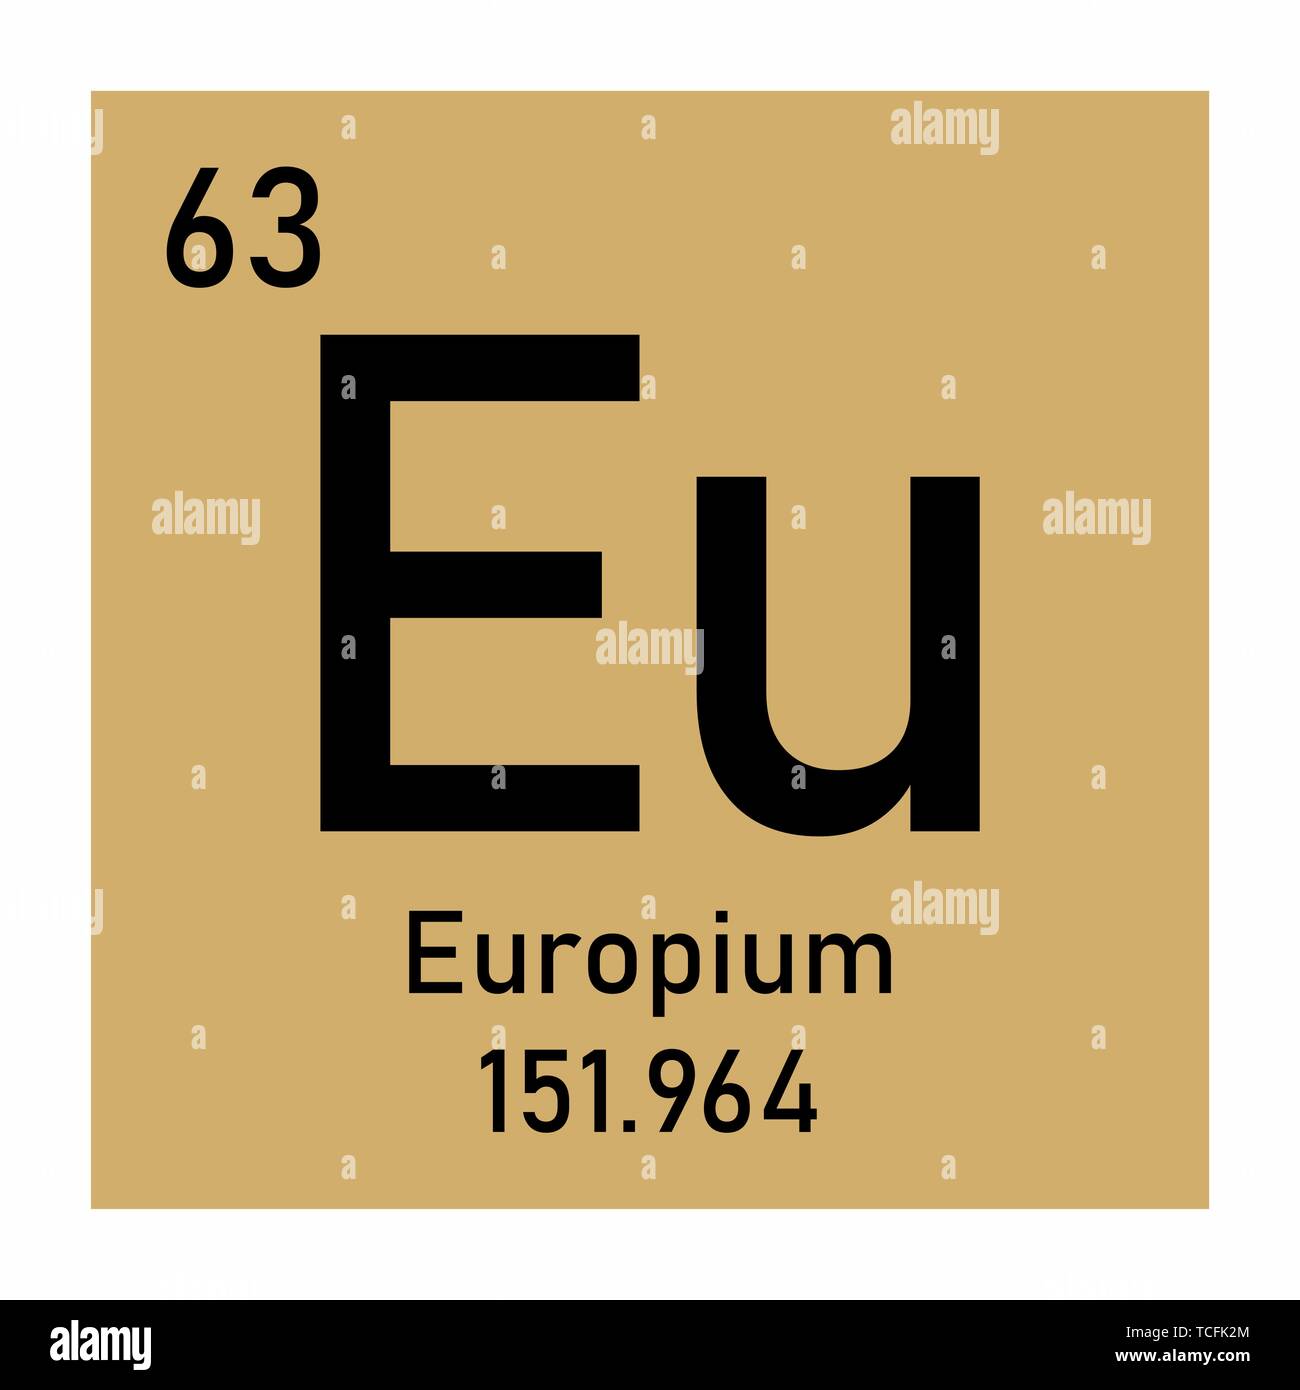 Европий химический элемент. Хим элемент европий. Европий в таблице Менделеева. Элемент в химии европий. Знак химического элемента европий.